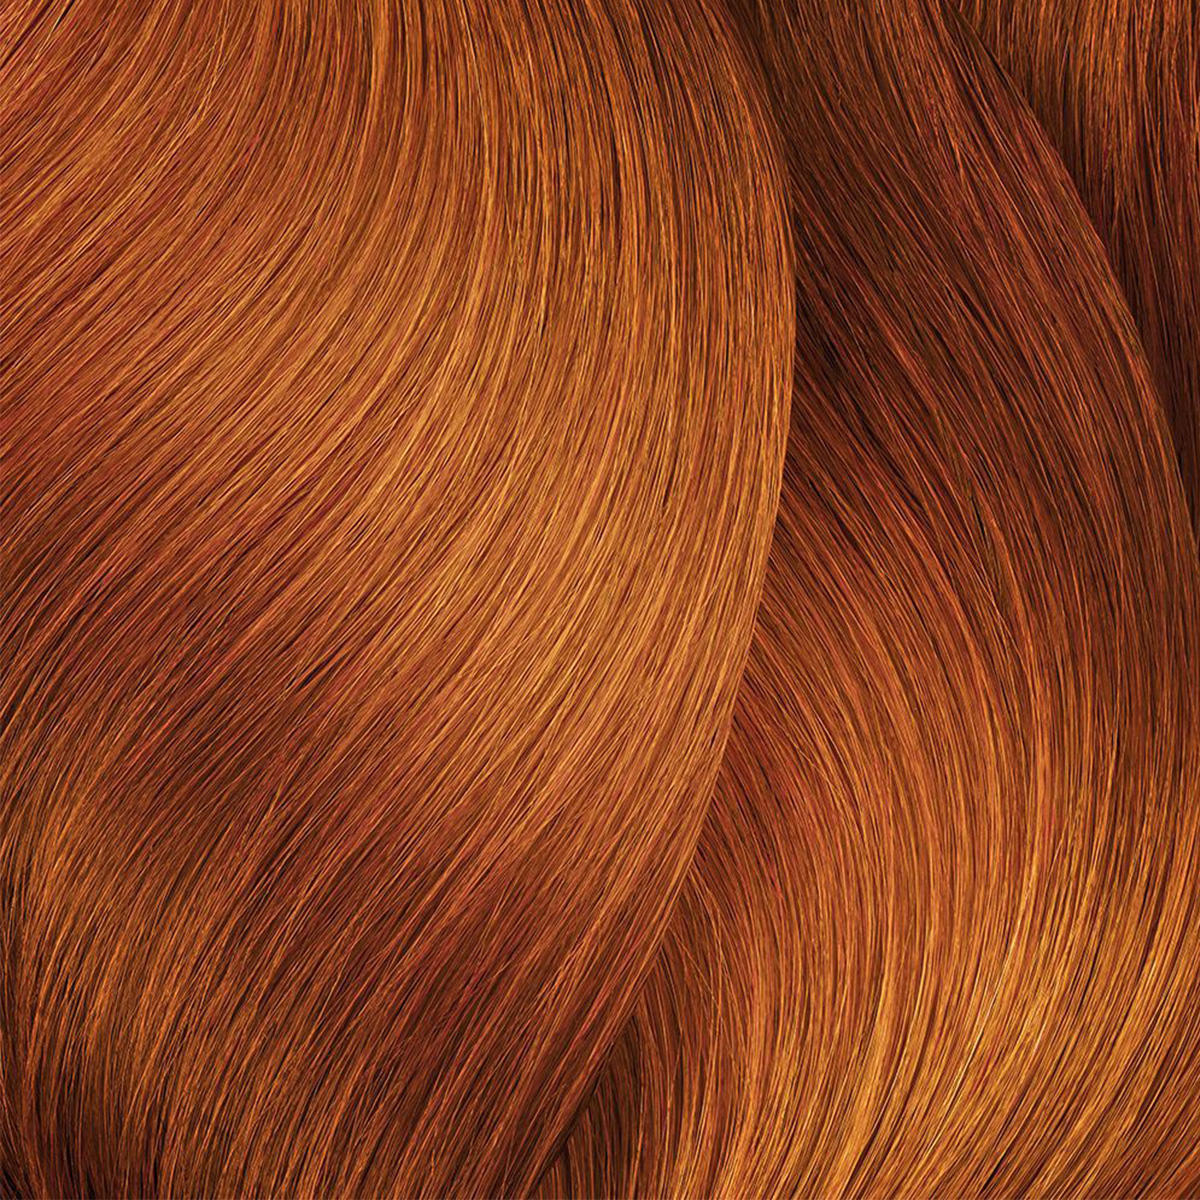 L'Oréal Professionnel Paris Coloration 7.44 Medium Blond Diep Koper, Tube 60 ml - 2